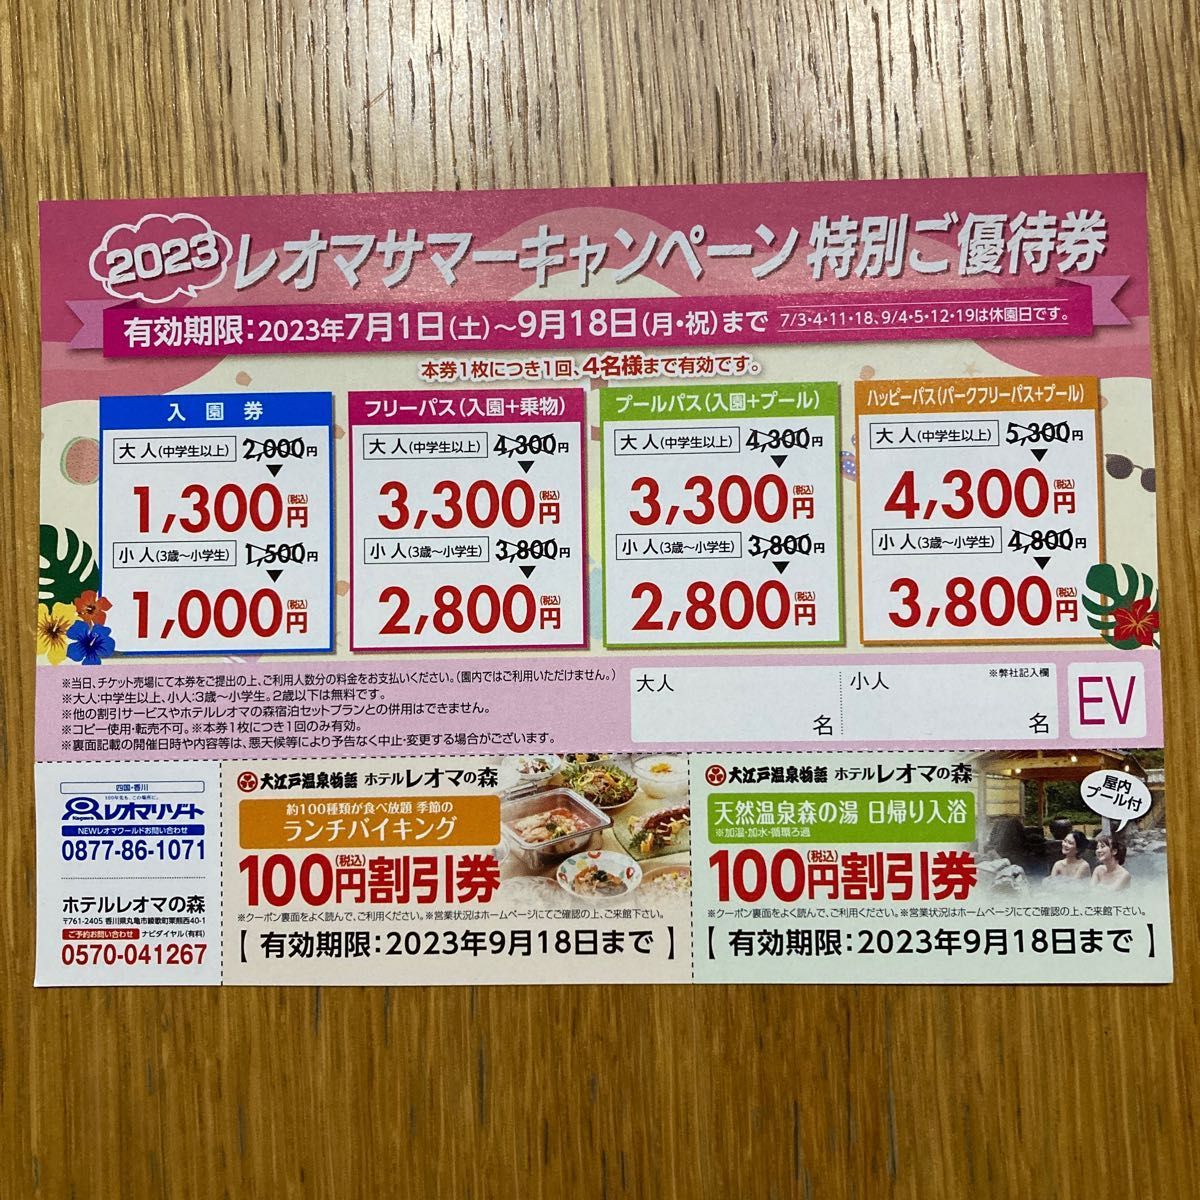 香川県 レオマワールド チケット 割引券 4枚 入園券 フリーパス プール